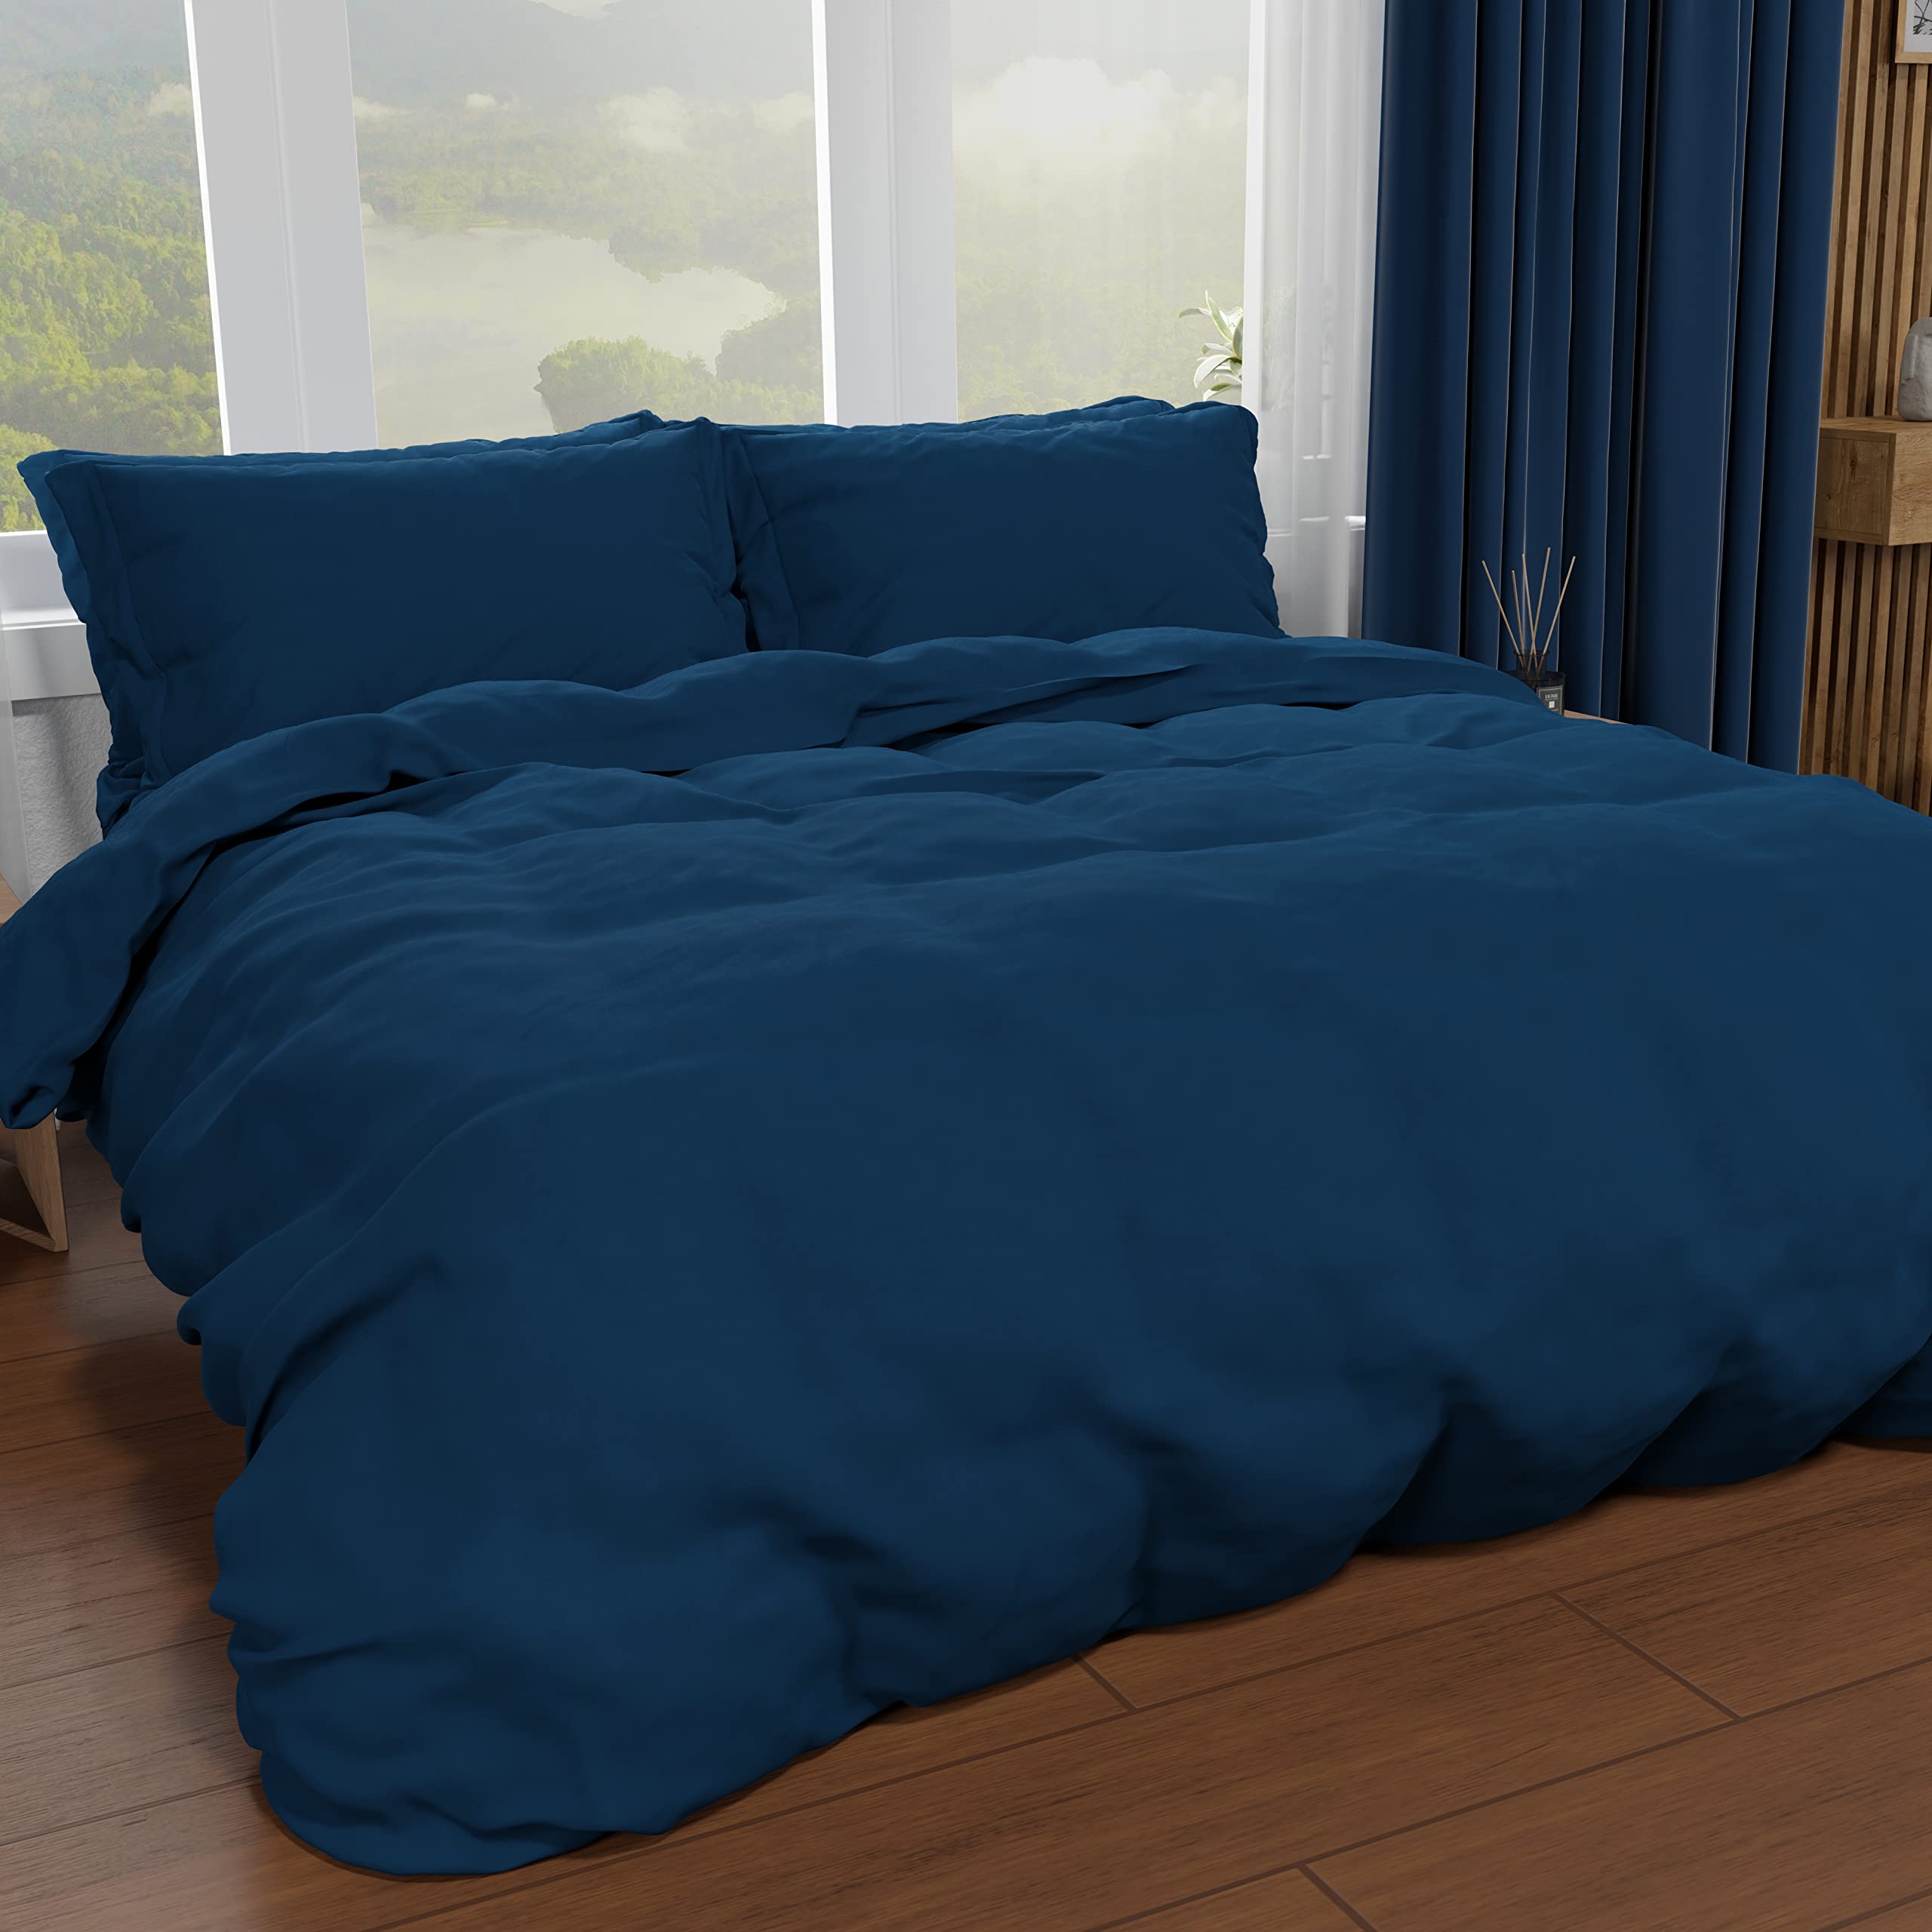 PETTI Artigiani Italiani - Bettbezug für Einzelbett, Bettbezug und Kissenbezüge aus Mikrofaser, einfarbig, Nachtblau, 100% Made in Italy